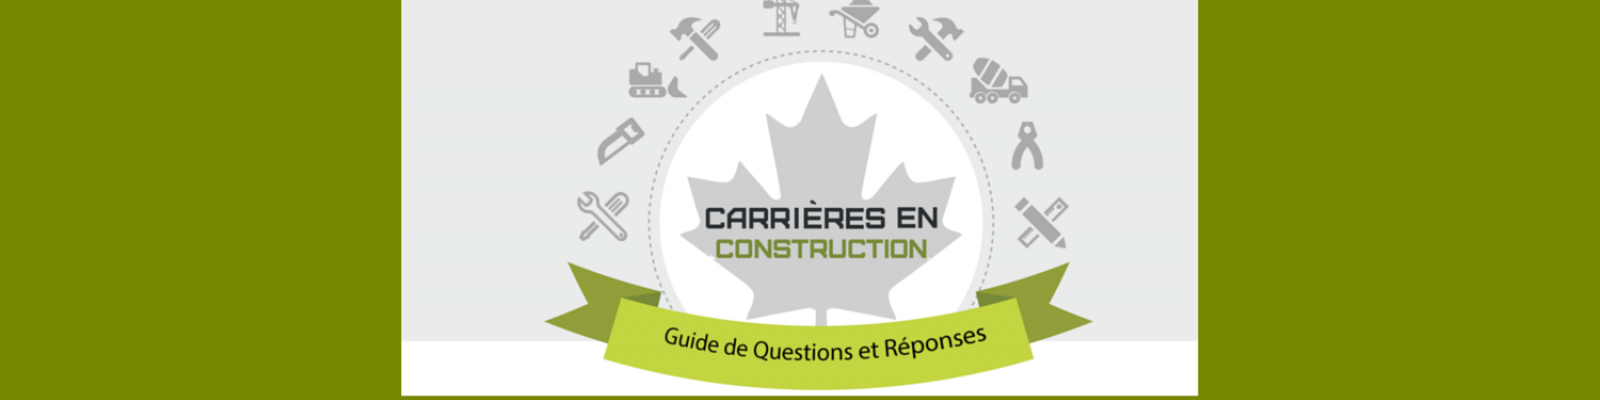 site web bannière Carrières en Construction Guide de Questions et Réponses - parents